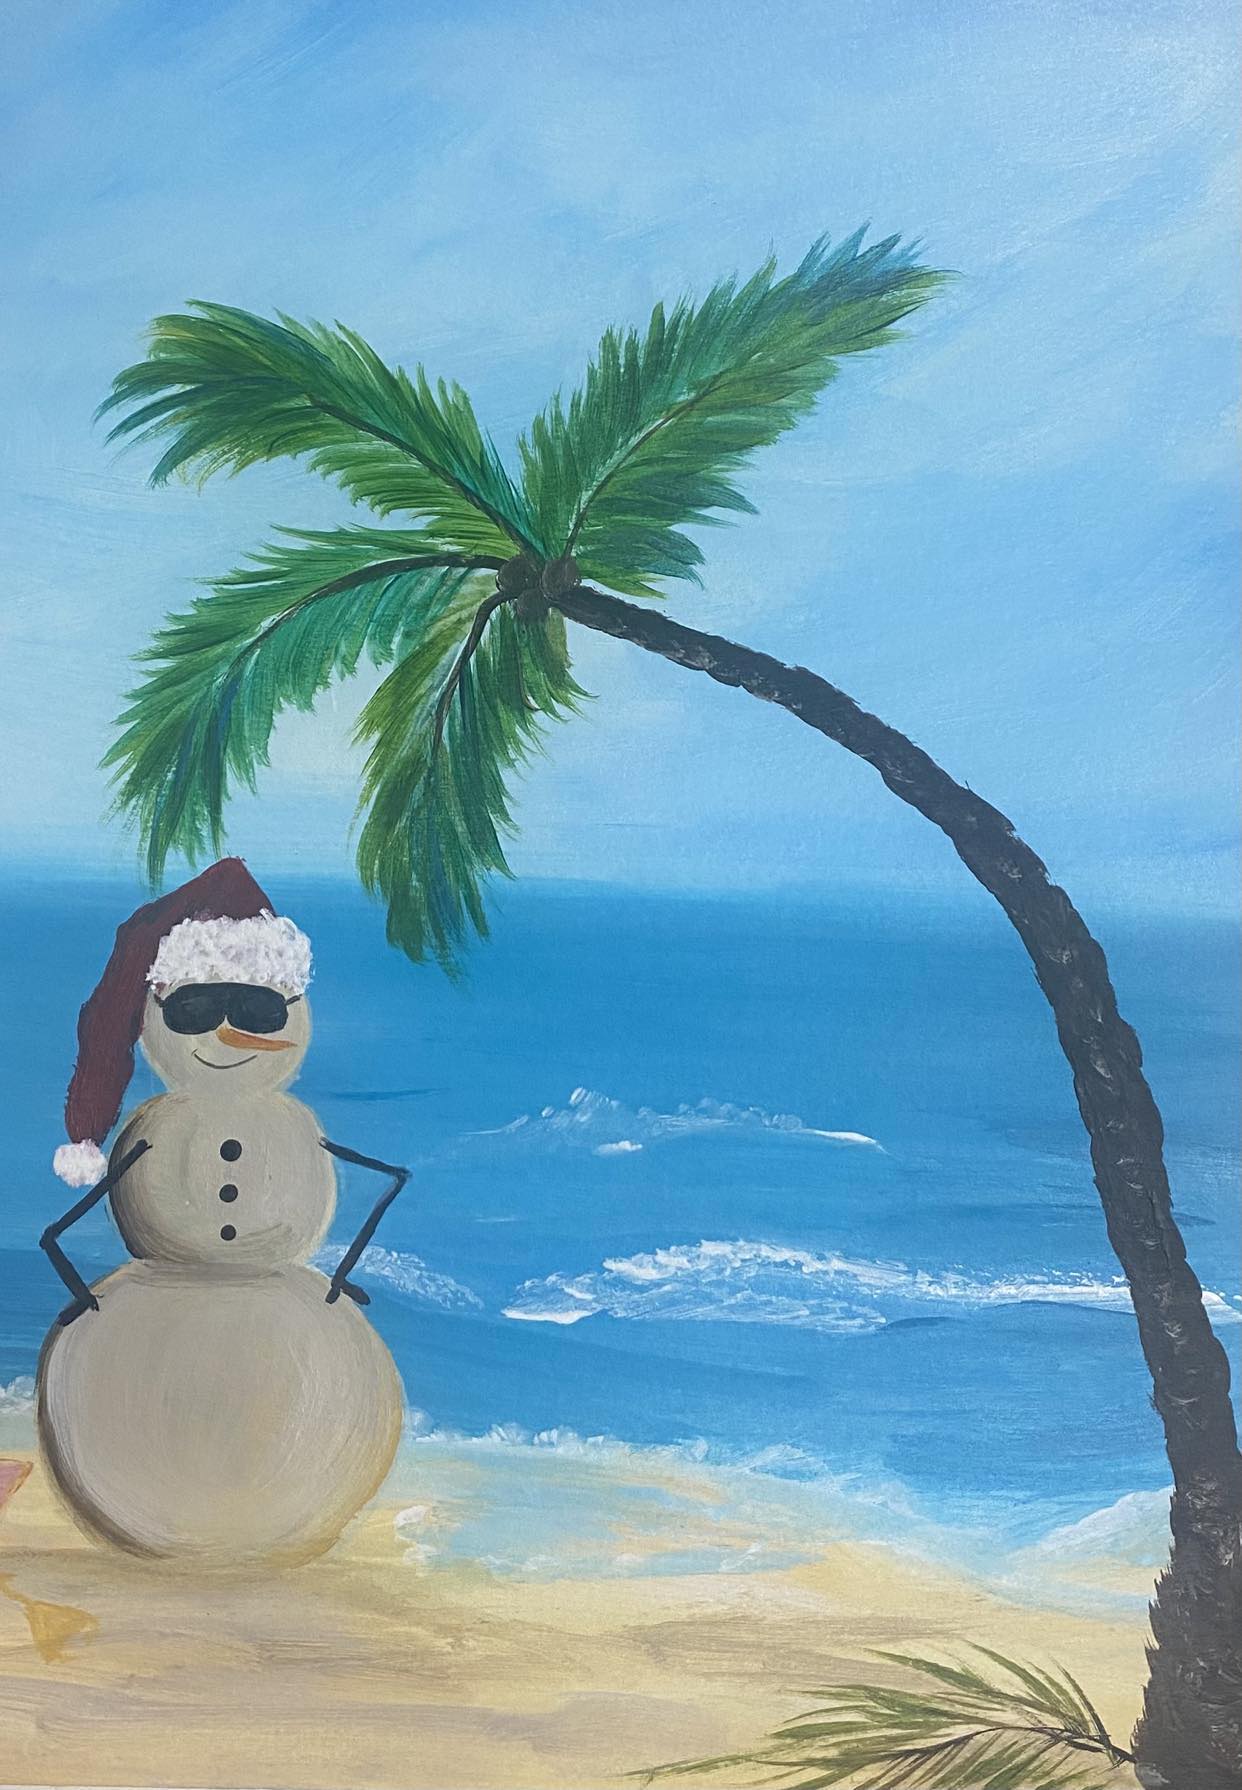 Snowman at the beach